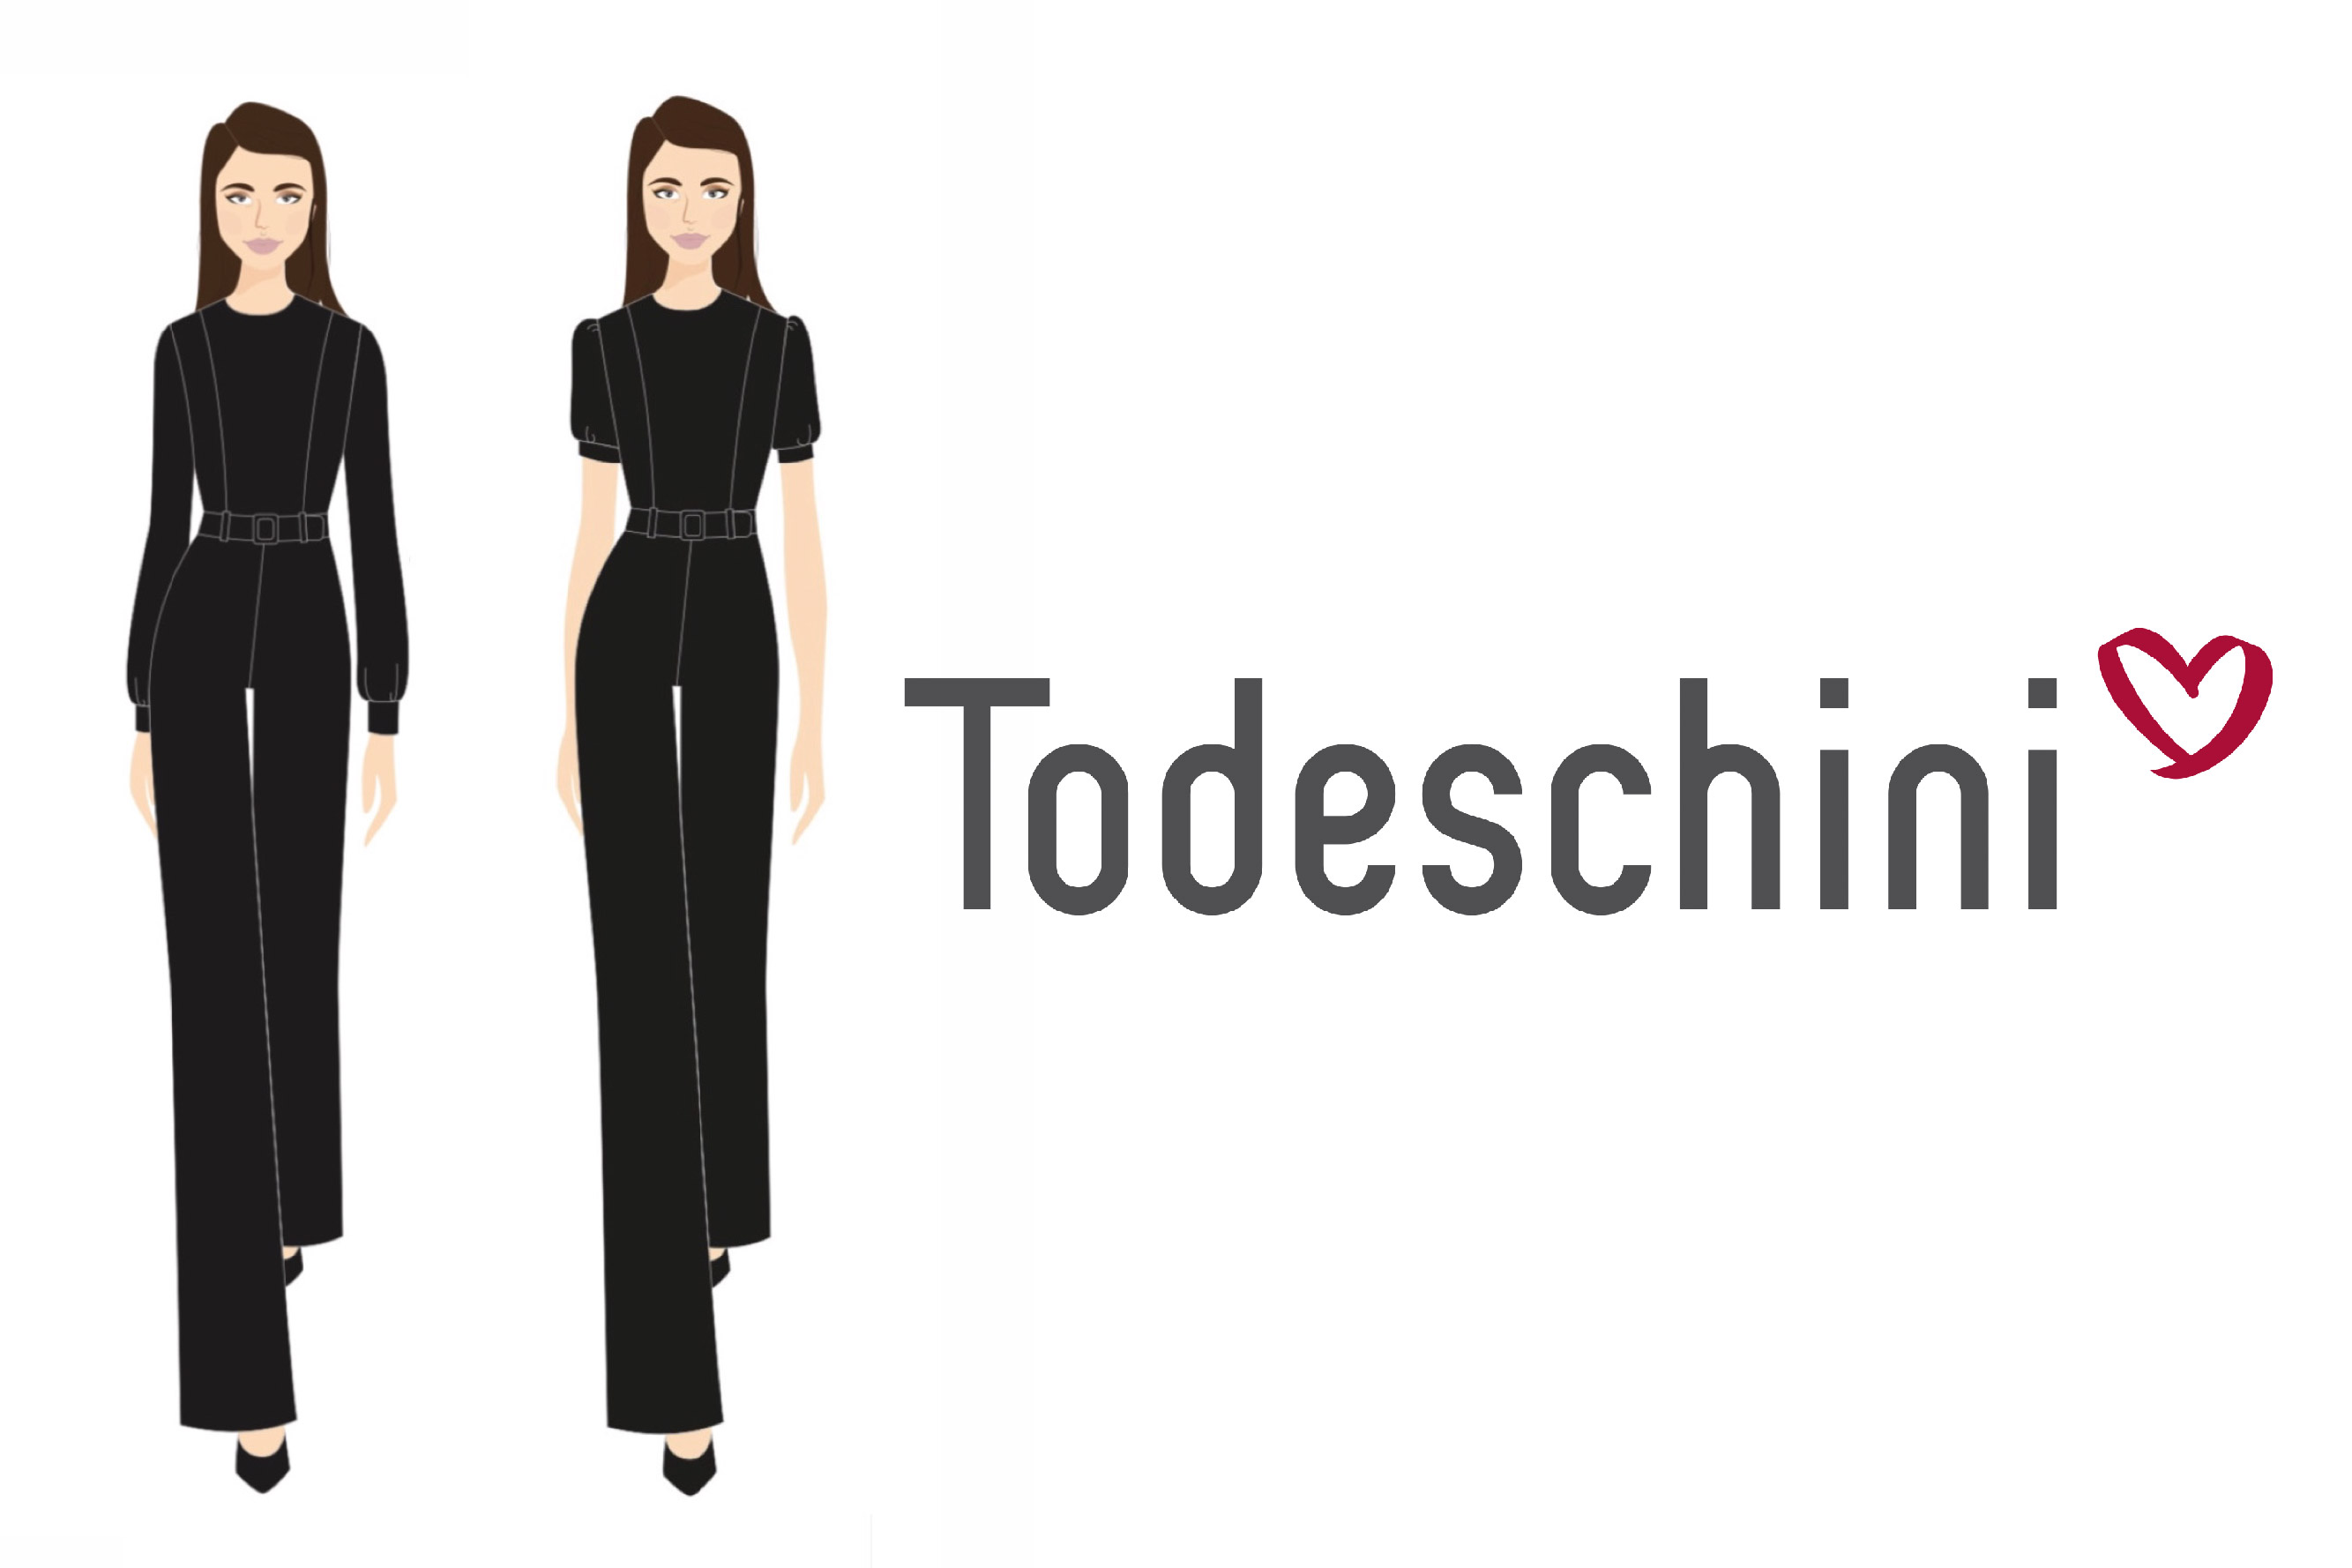 Croquis dos modelos de uniformes da Todeschini criados pela Dash Uniformes.